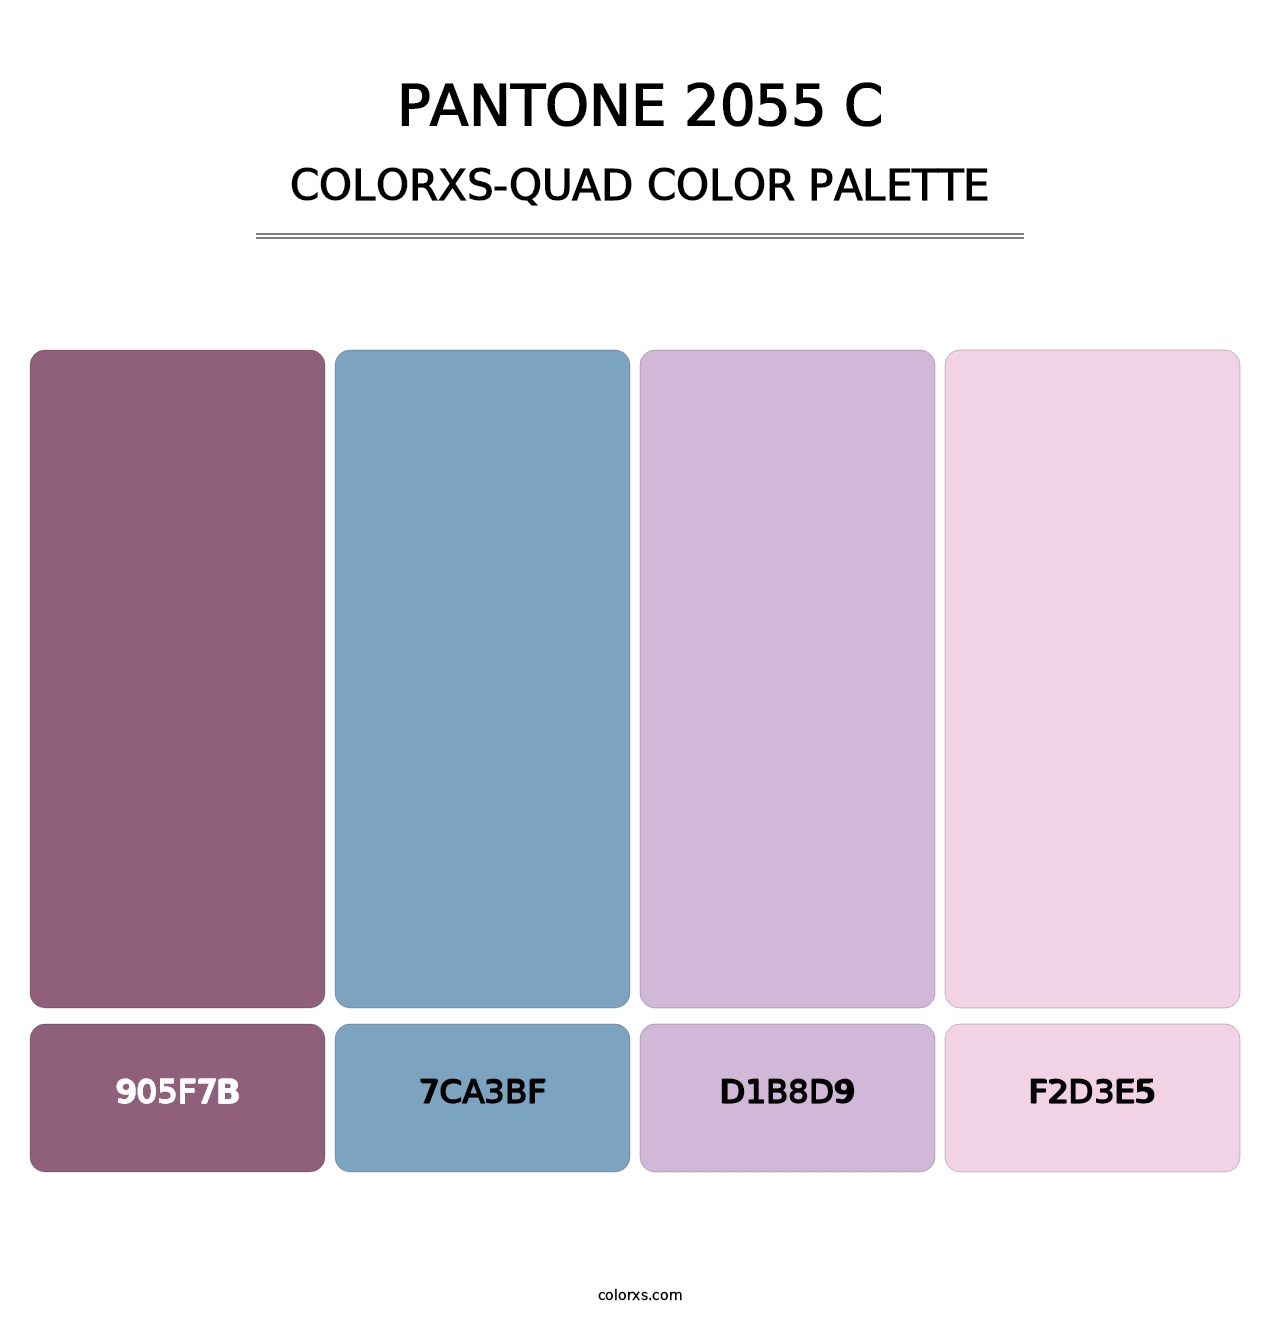 PANTONE 2055 C - Colorxs Quad Palette